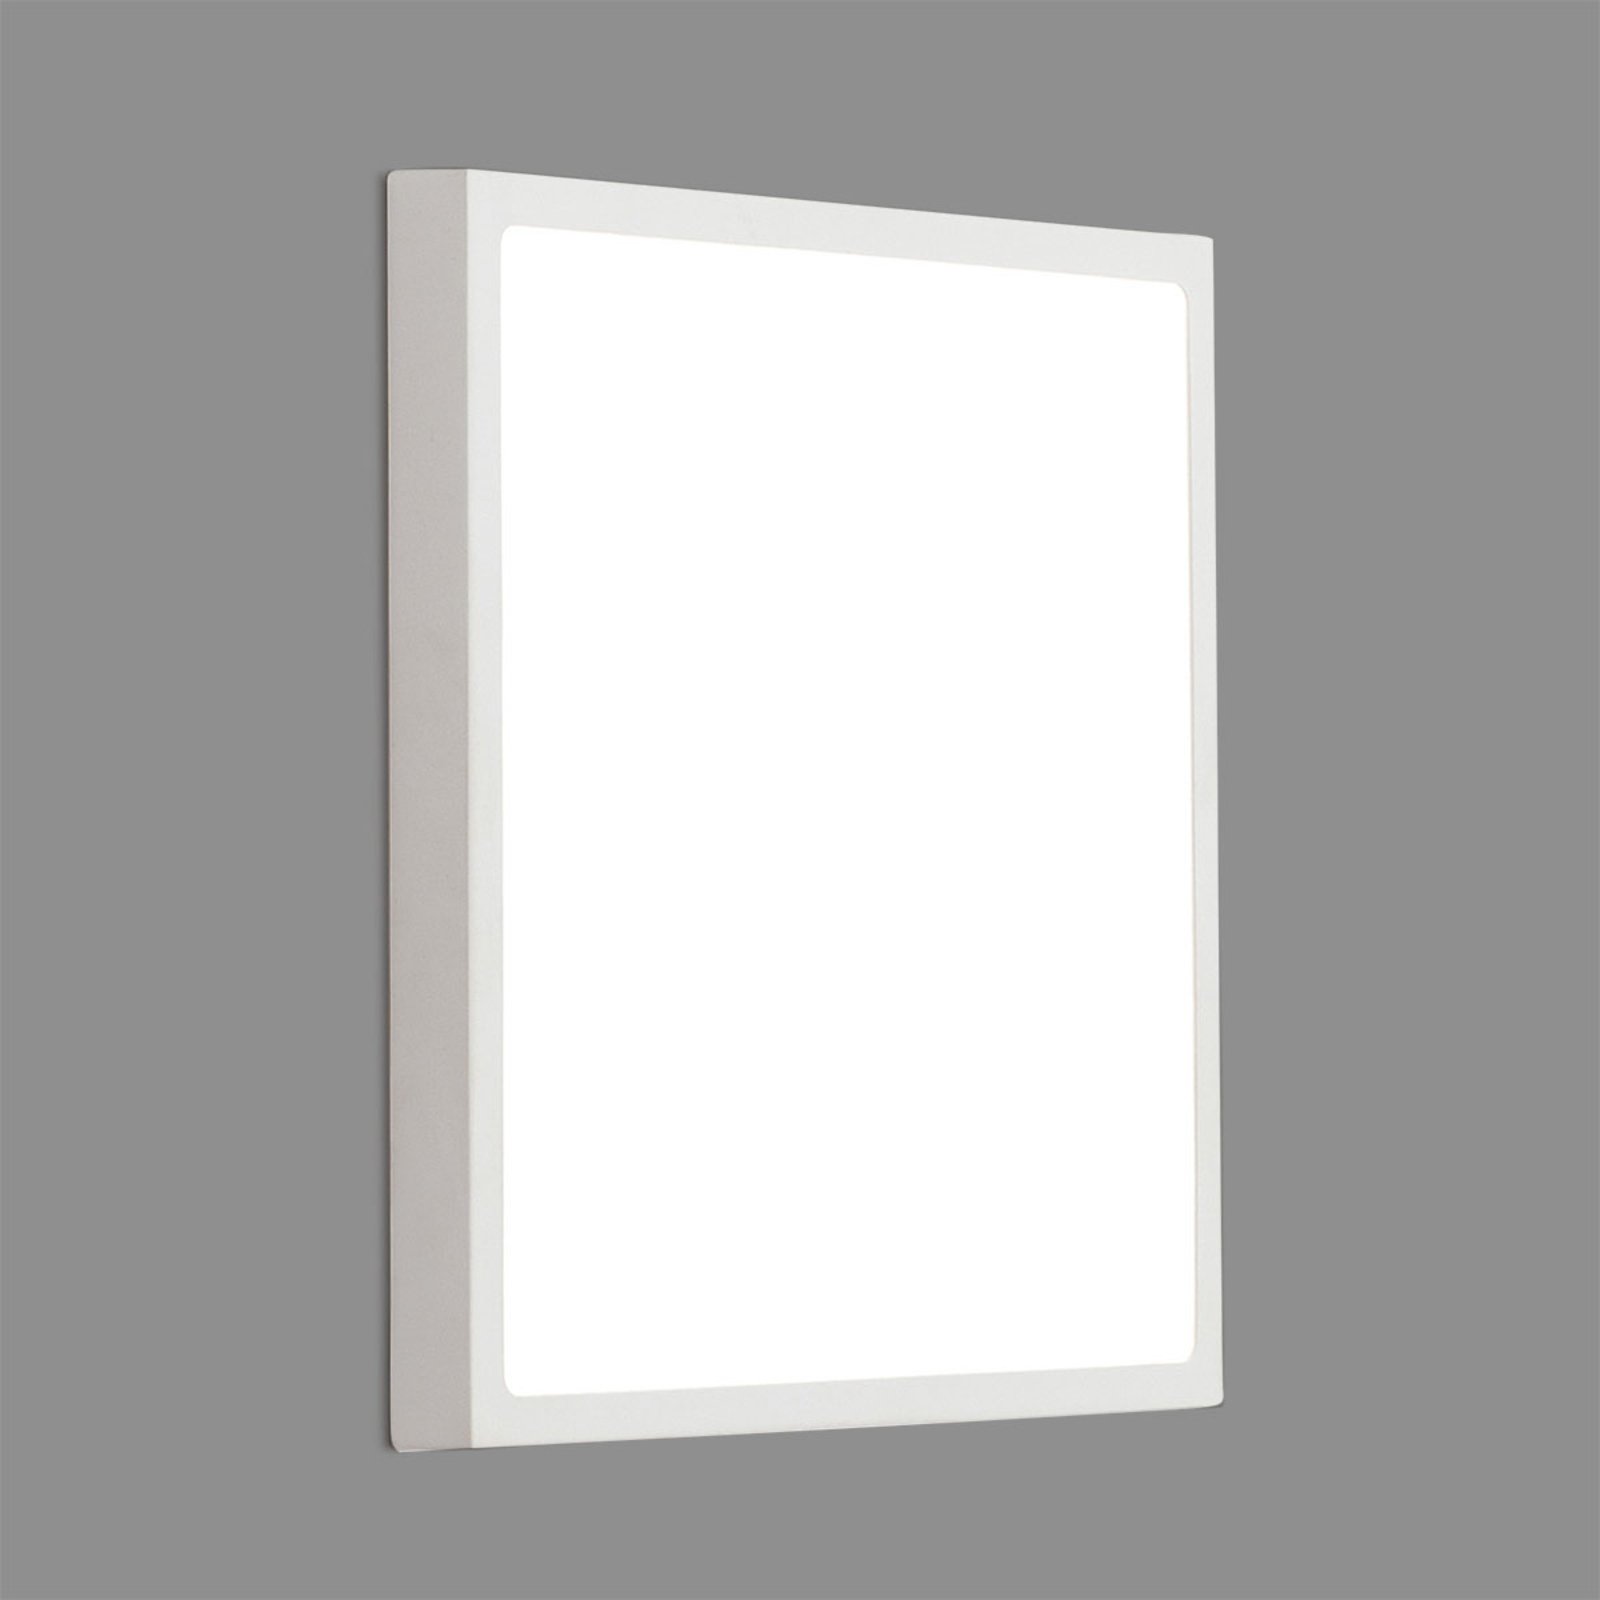 Kinkiet LED Vika kwadratowy, biały, 30x30cm